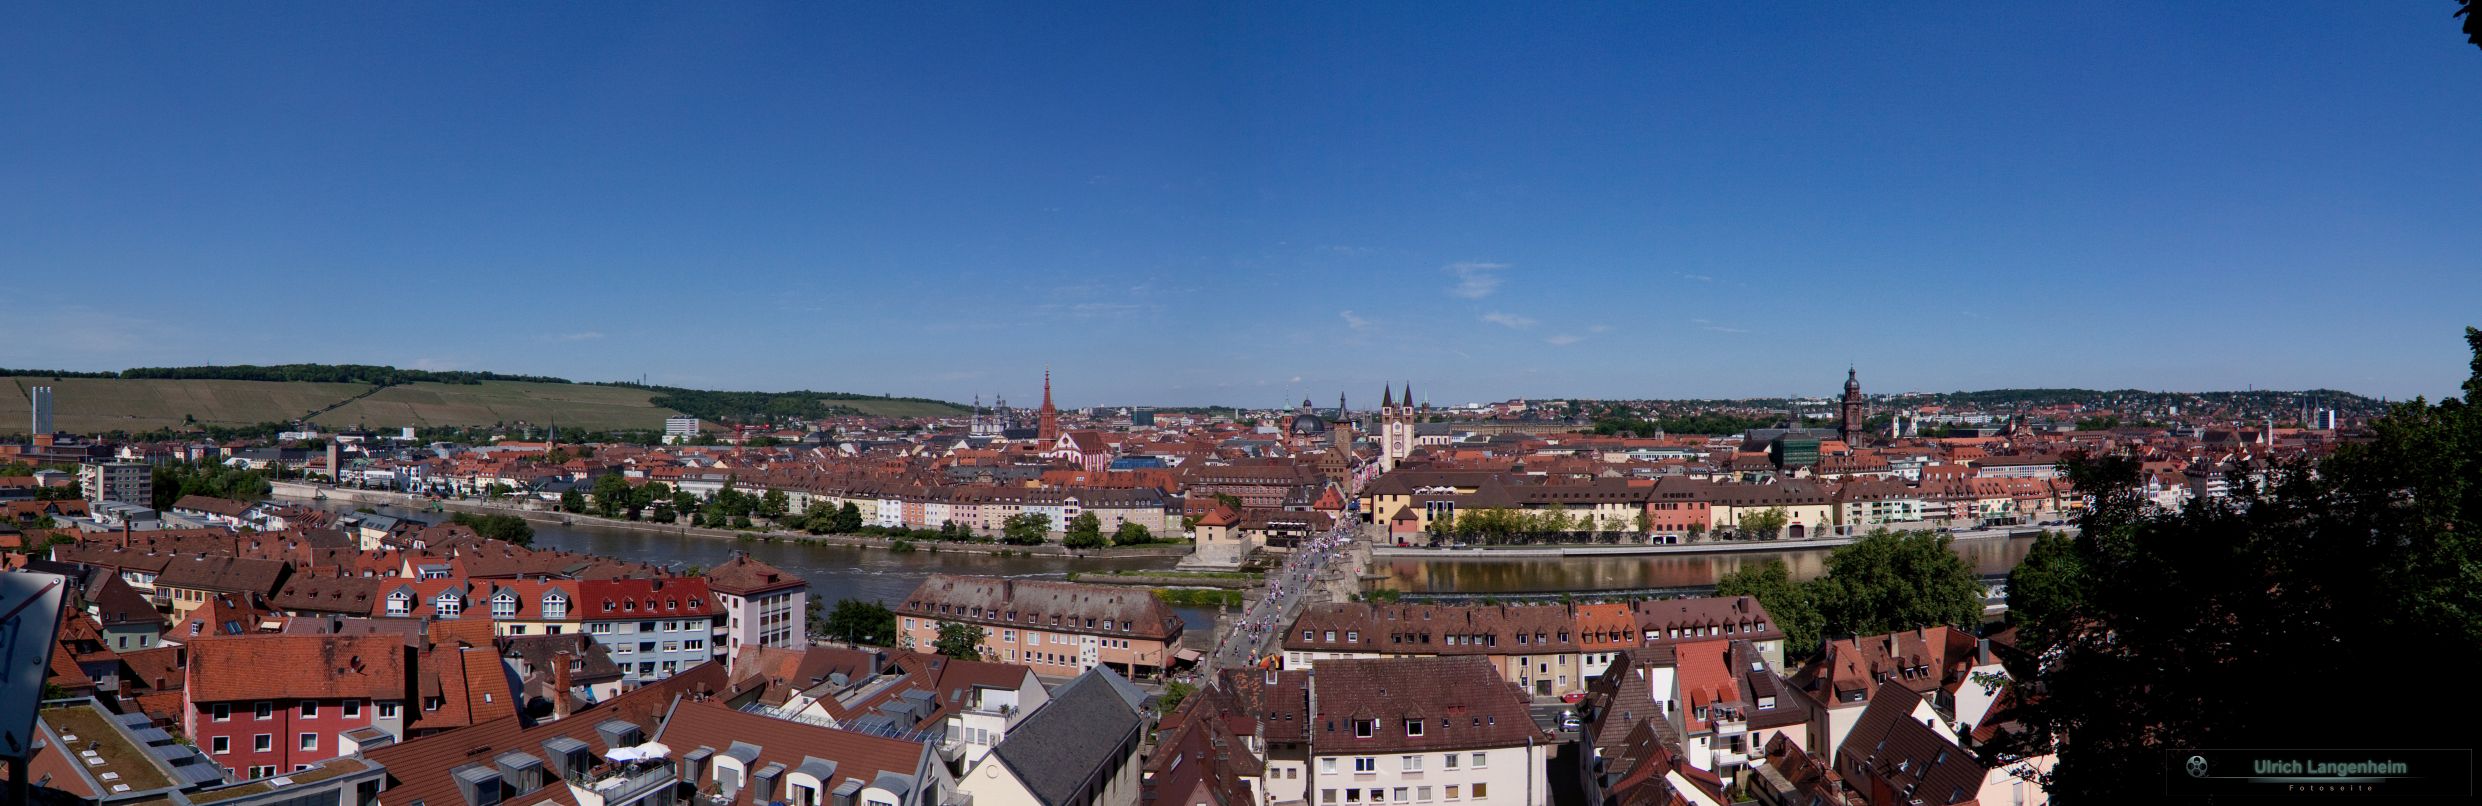 Wrzburg_Panorama1_LR2